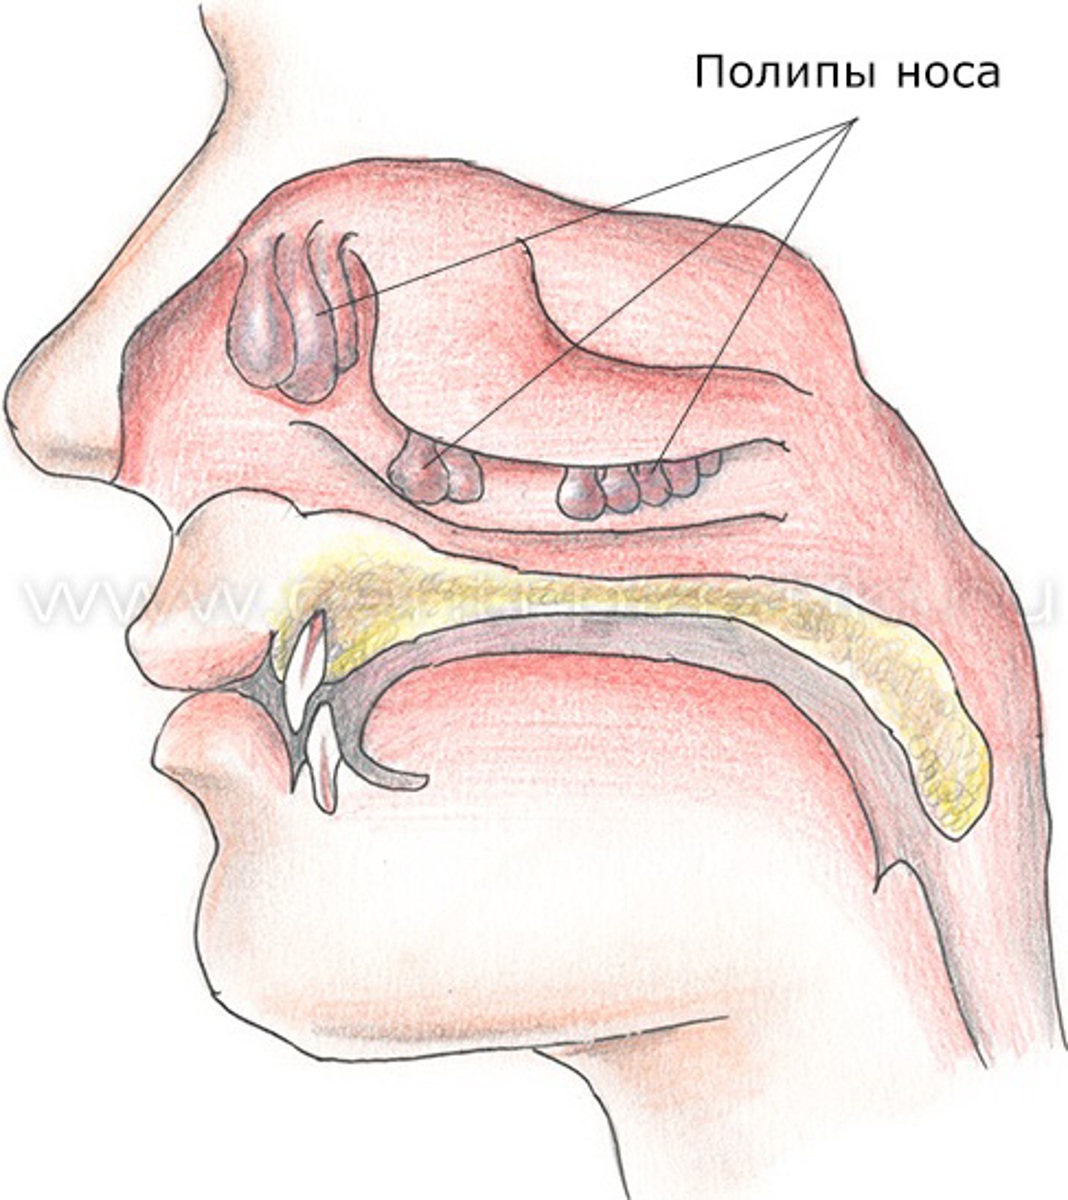 Полипы в носу - симптомы и лечение